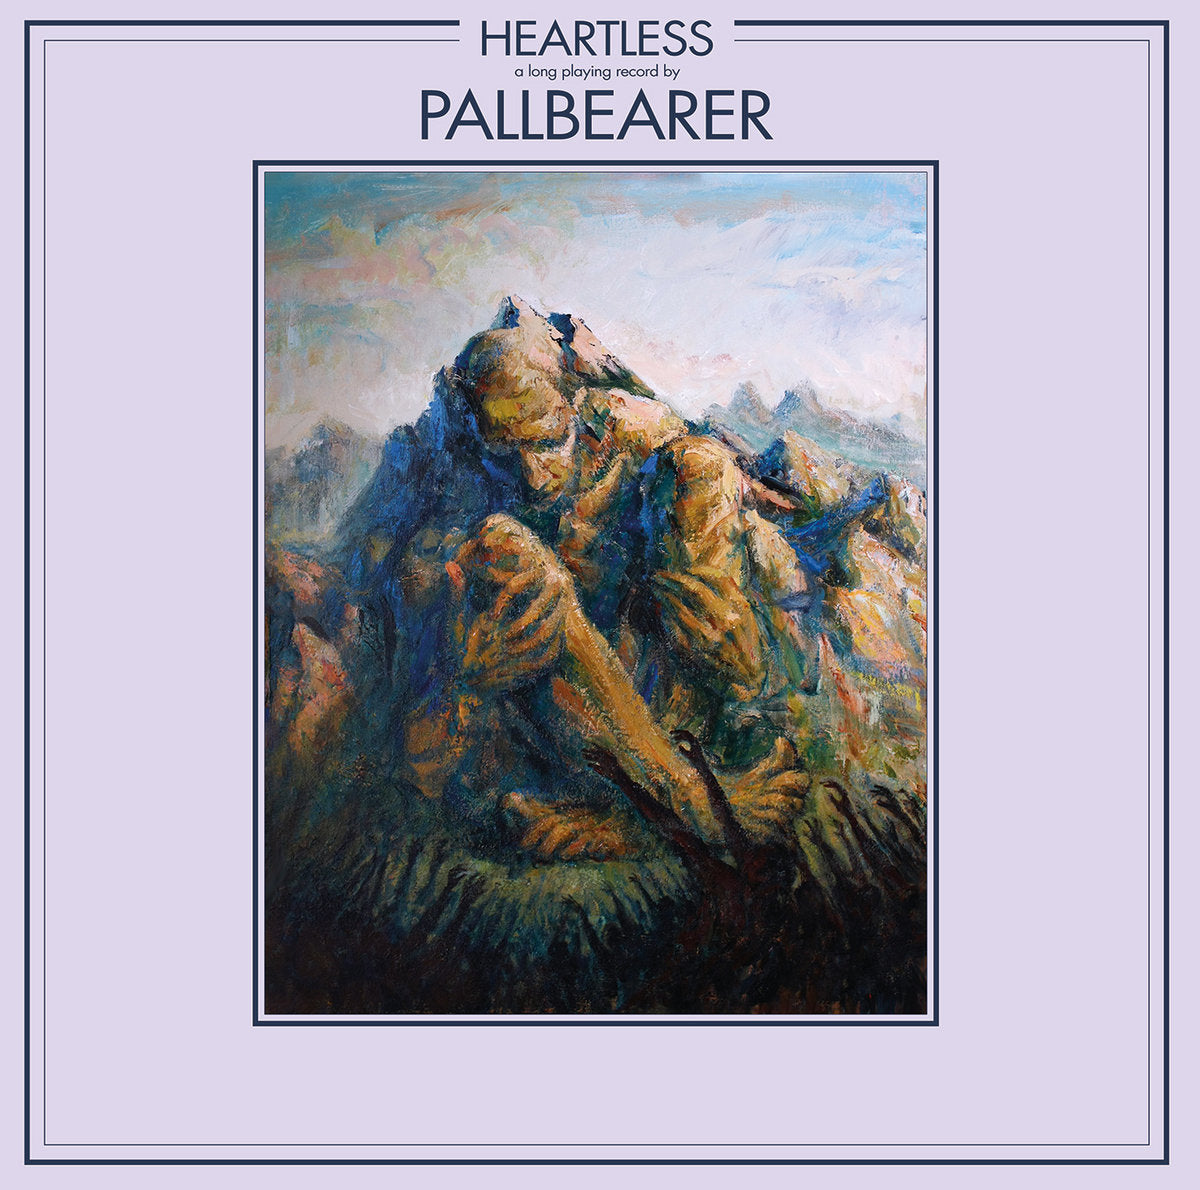 Pallbearer "Heartless" 2x12" Vinyl